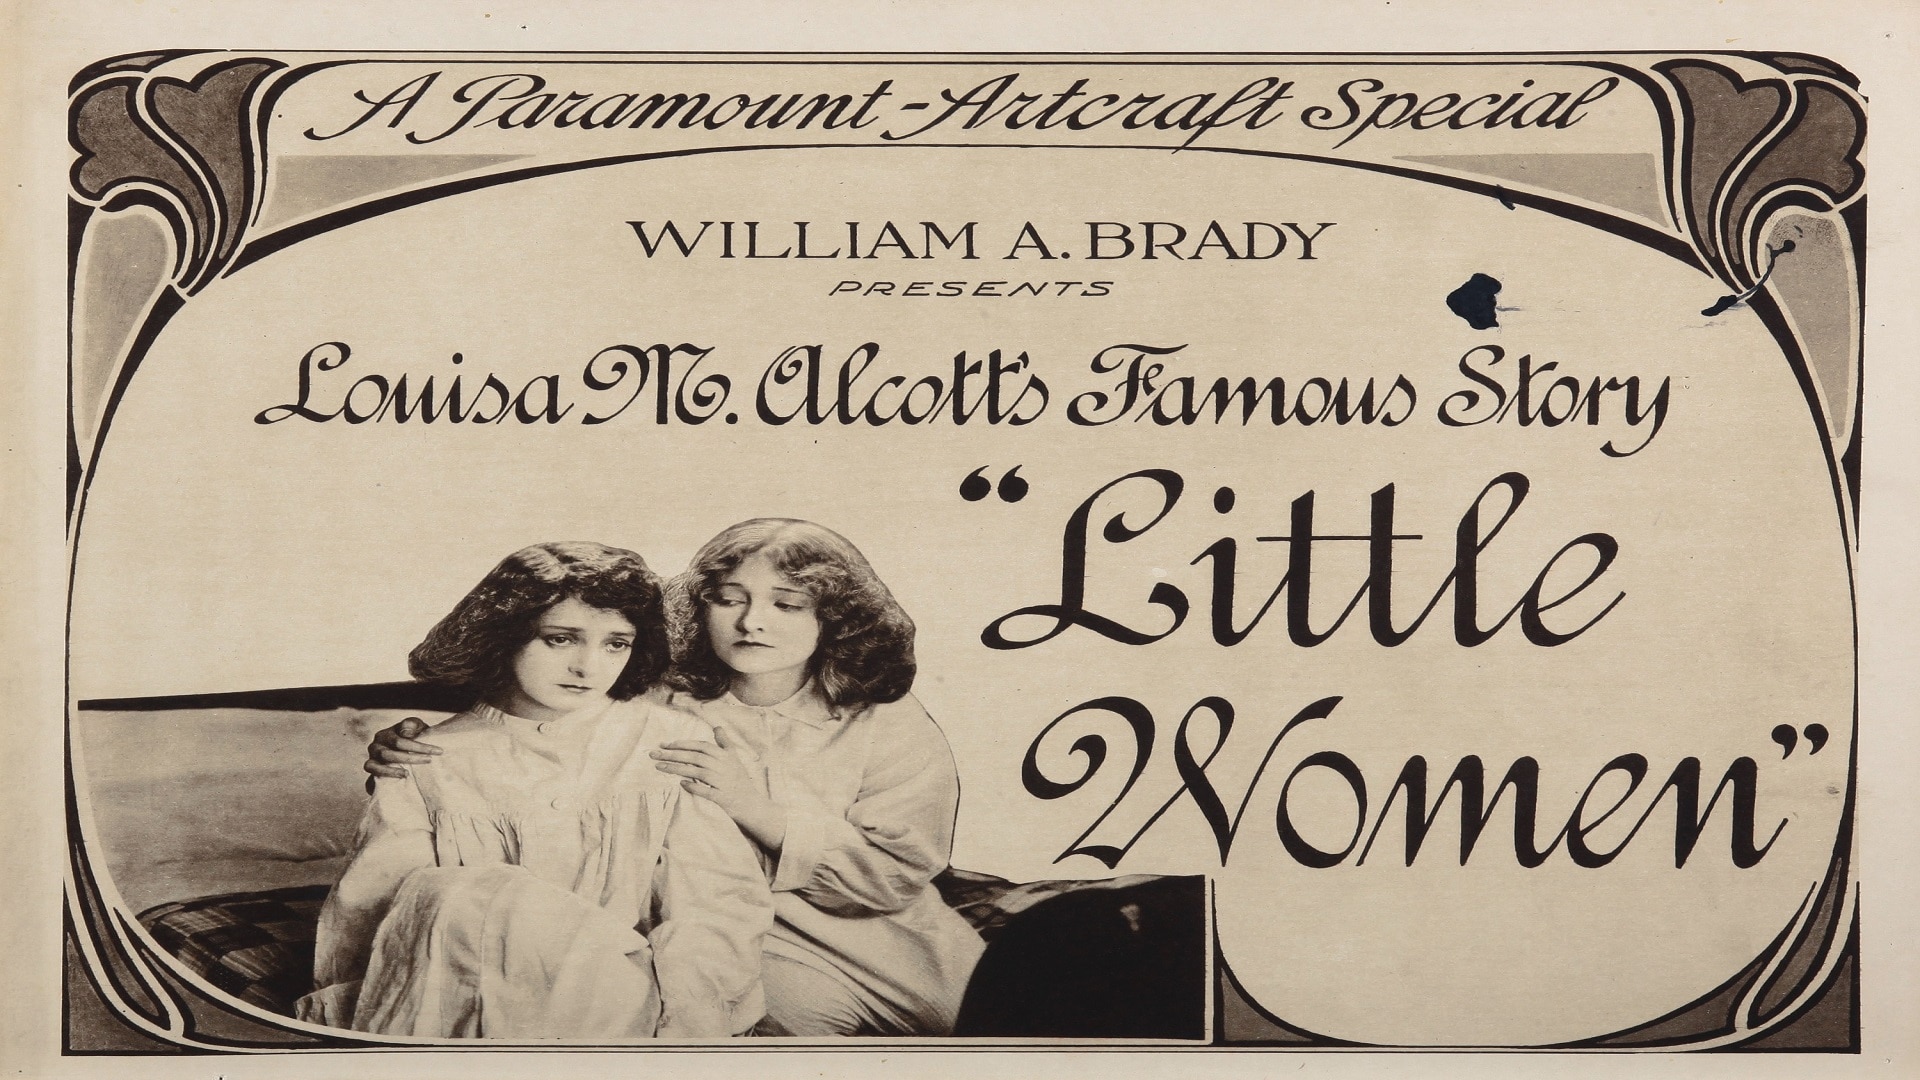 Piccole donne del 1949 tratto da "Little women" di Louis M. Alcott